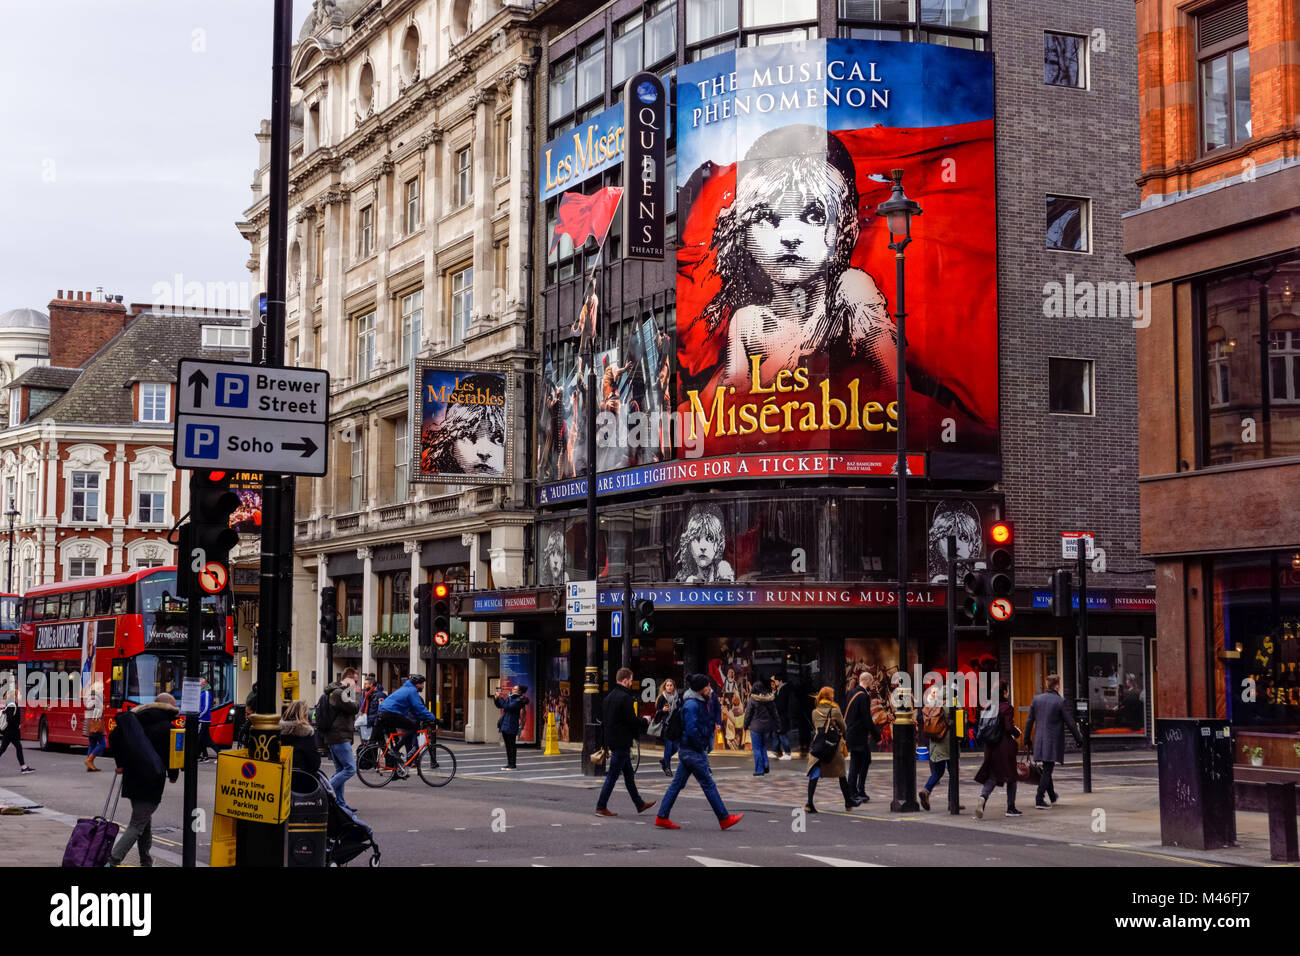 Les Miserables au théâtre de Sondheim à West End sur Shaftesbury Avenue, Londres Angleterre Royaume-Uni Banque D'Images